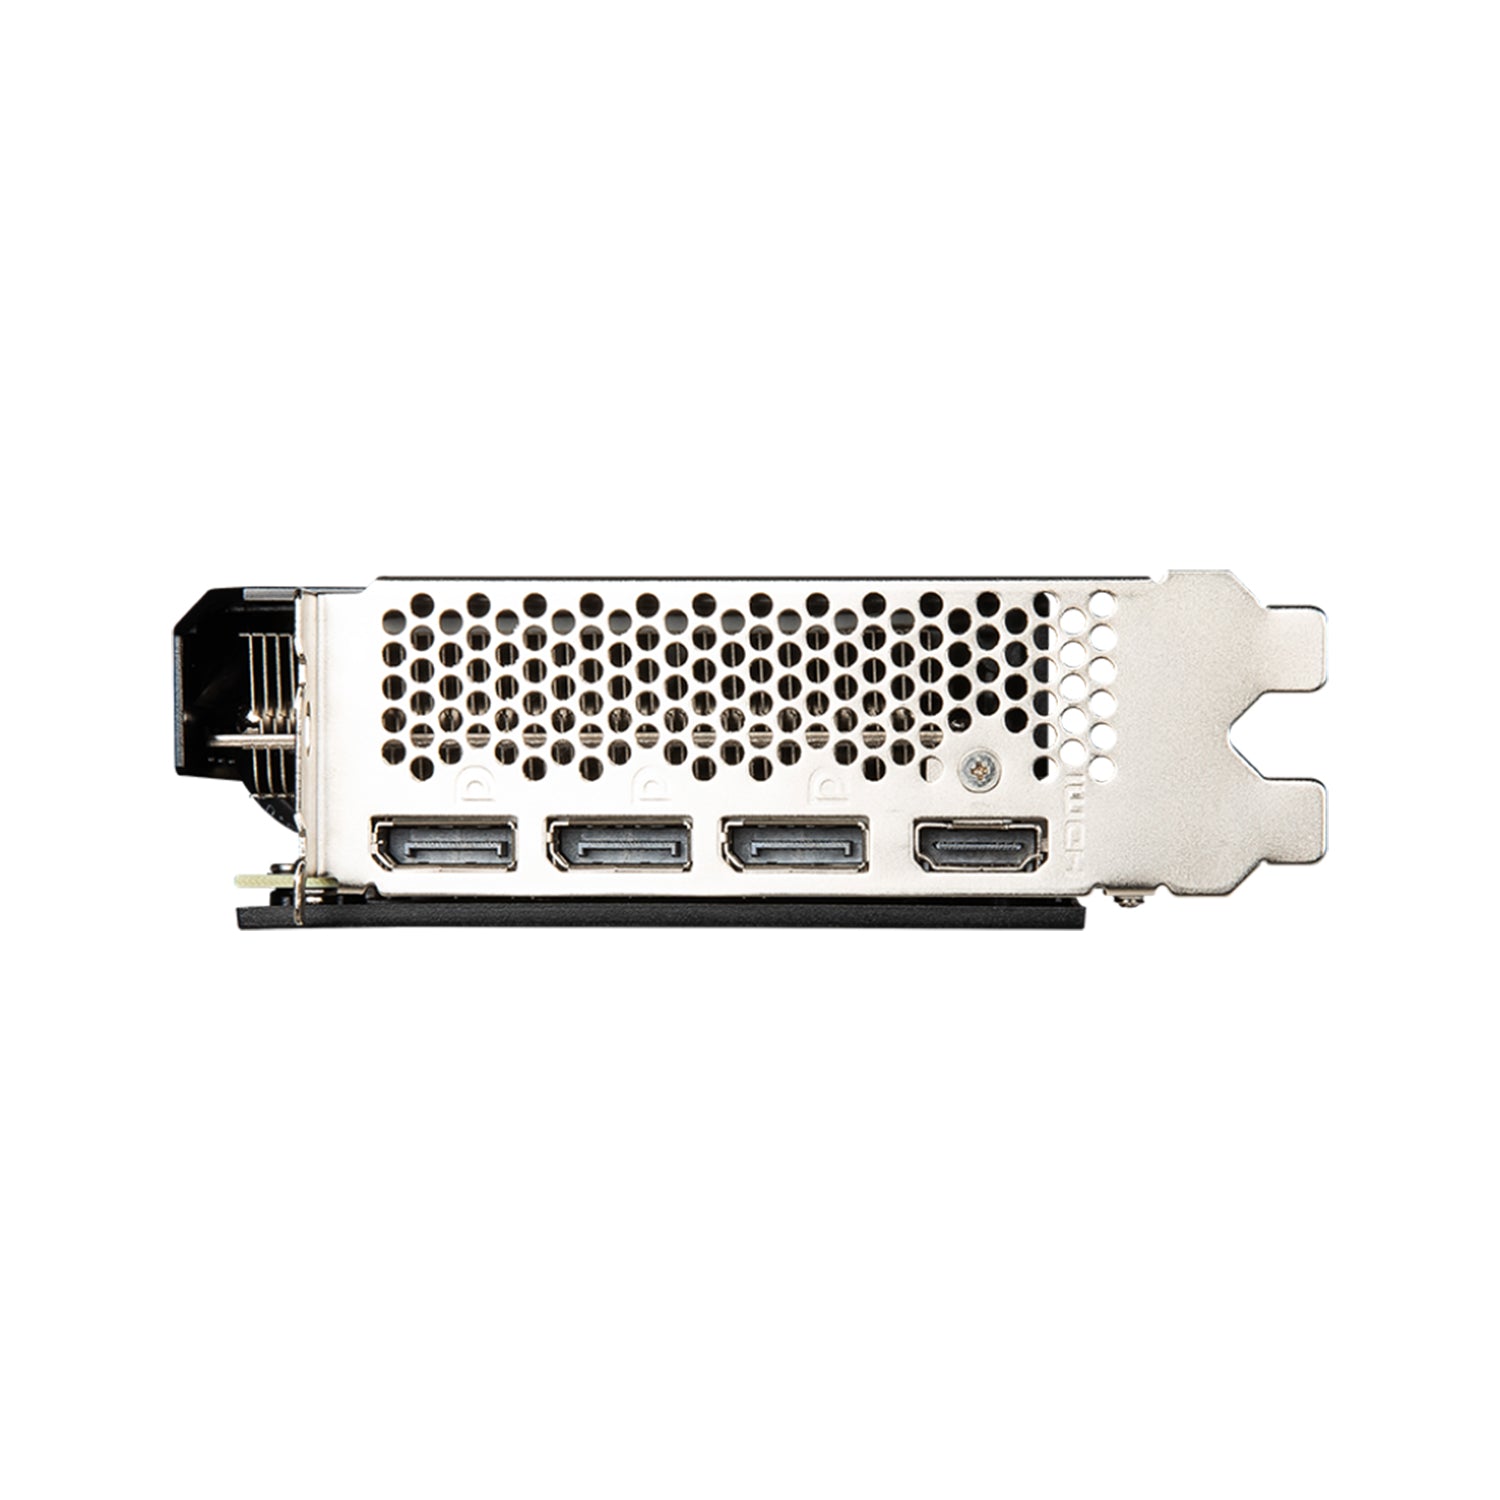 MSI GeForce RTX 3060 Graphics card, 12GB GDDR6 - Video card, PCI Express Gen 4, 3 x Display port, 1 x HDMI (RTX 3060 AERO ITX 12G OC)